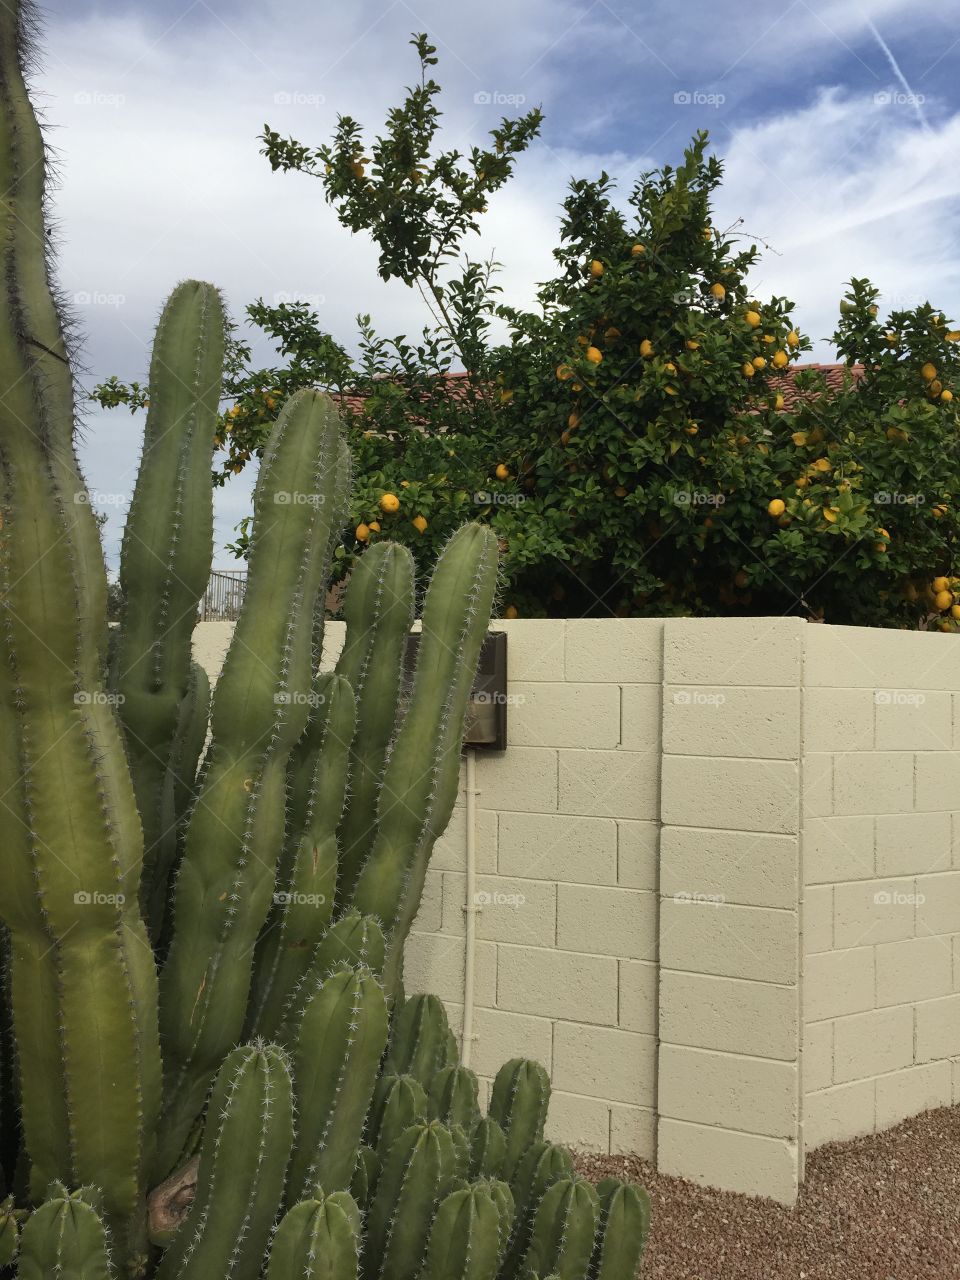 Cactus and citrus